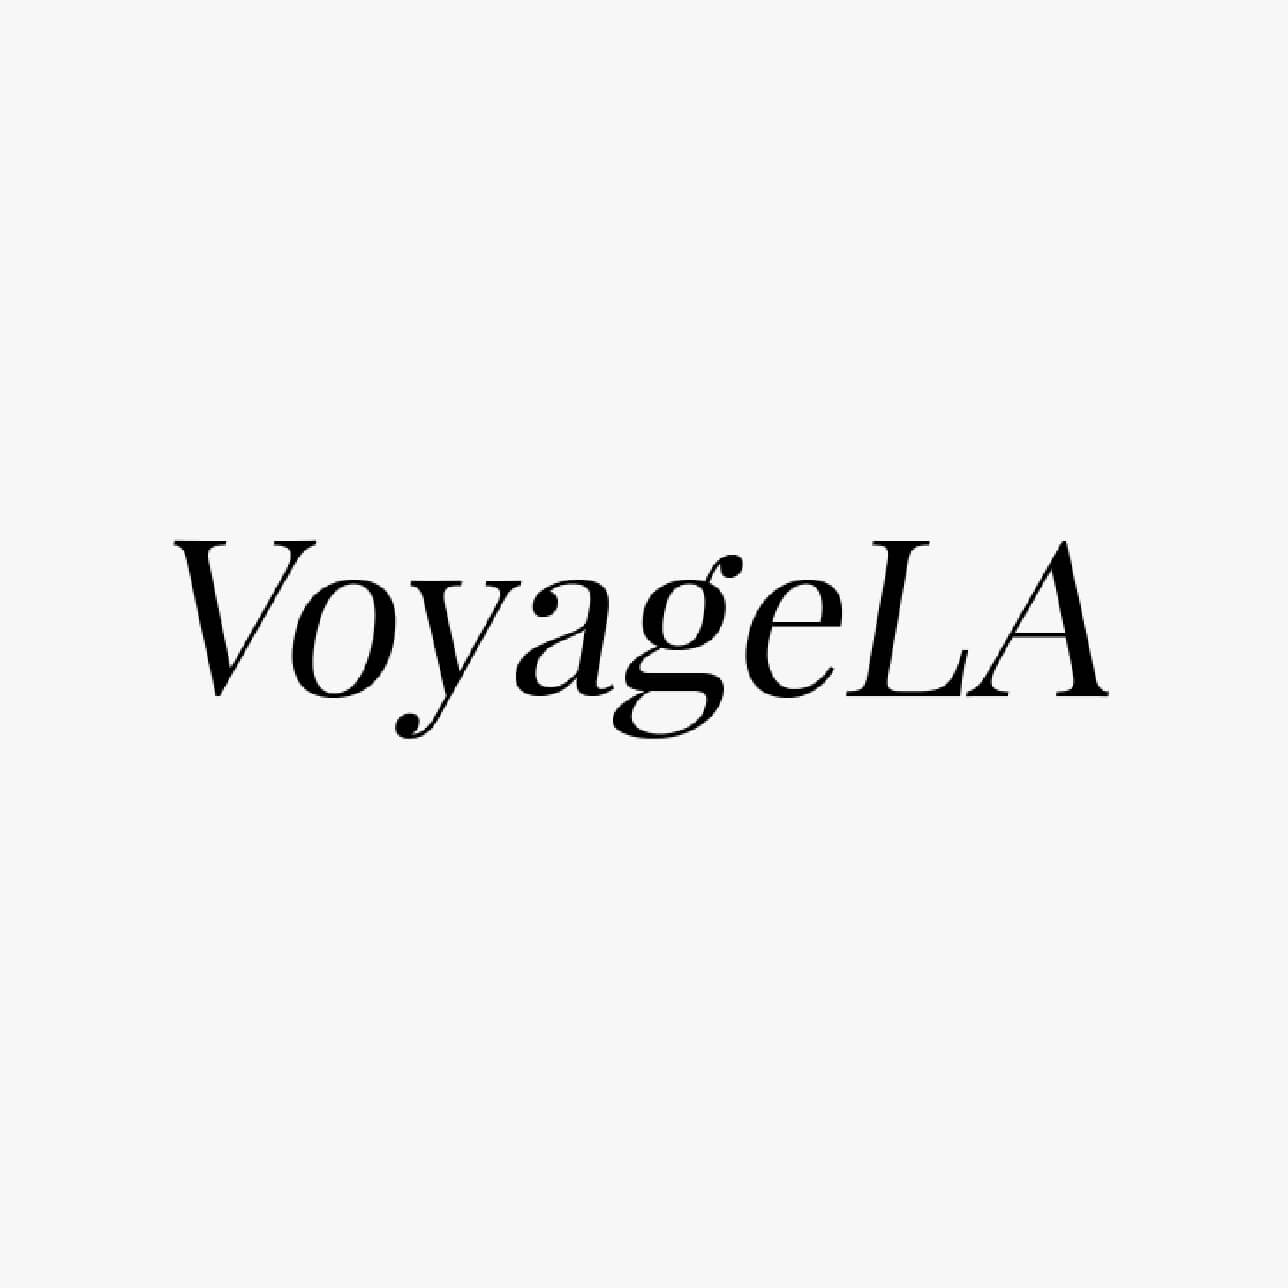 Press_Voyage_LA_1